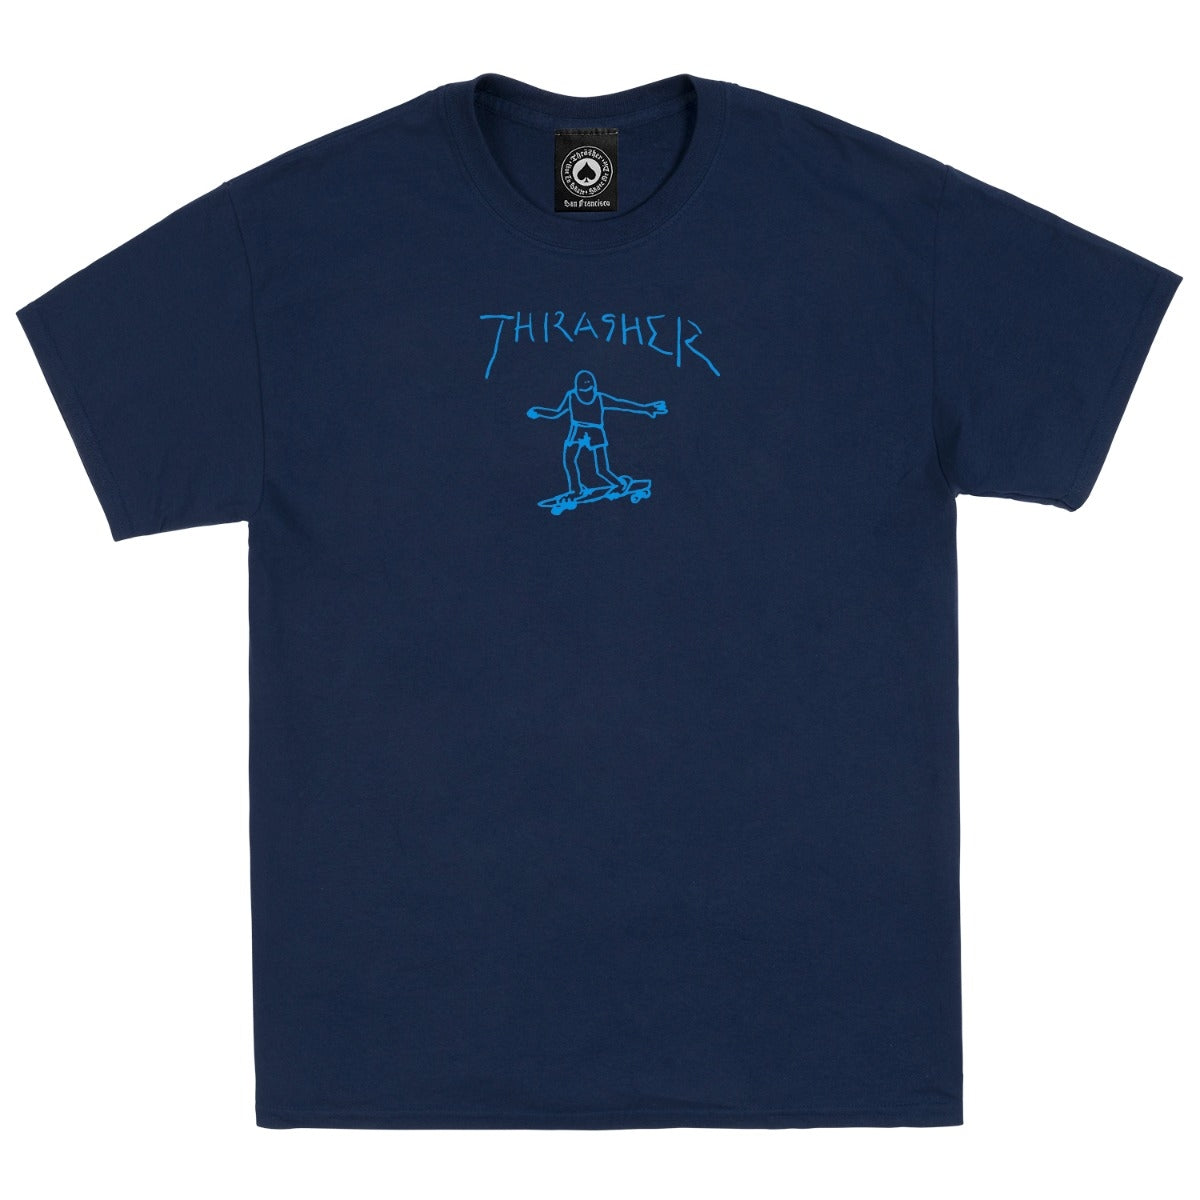 THRASHER - GONZ TEE - NAVY BLUE